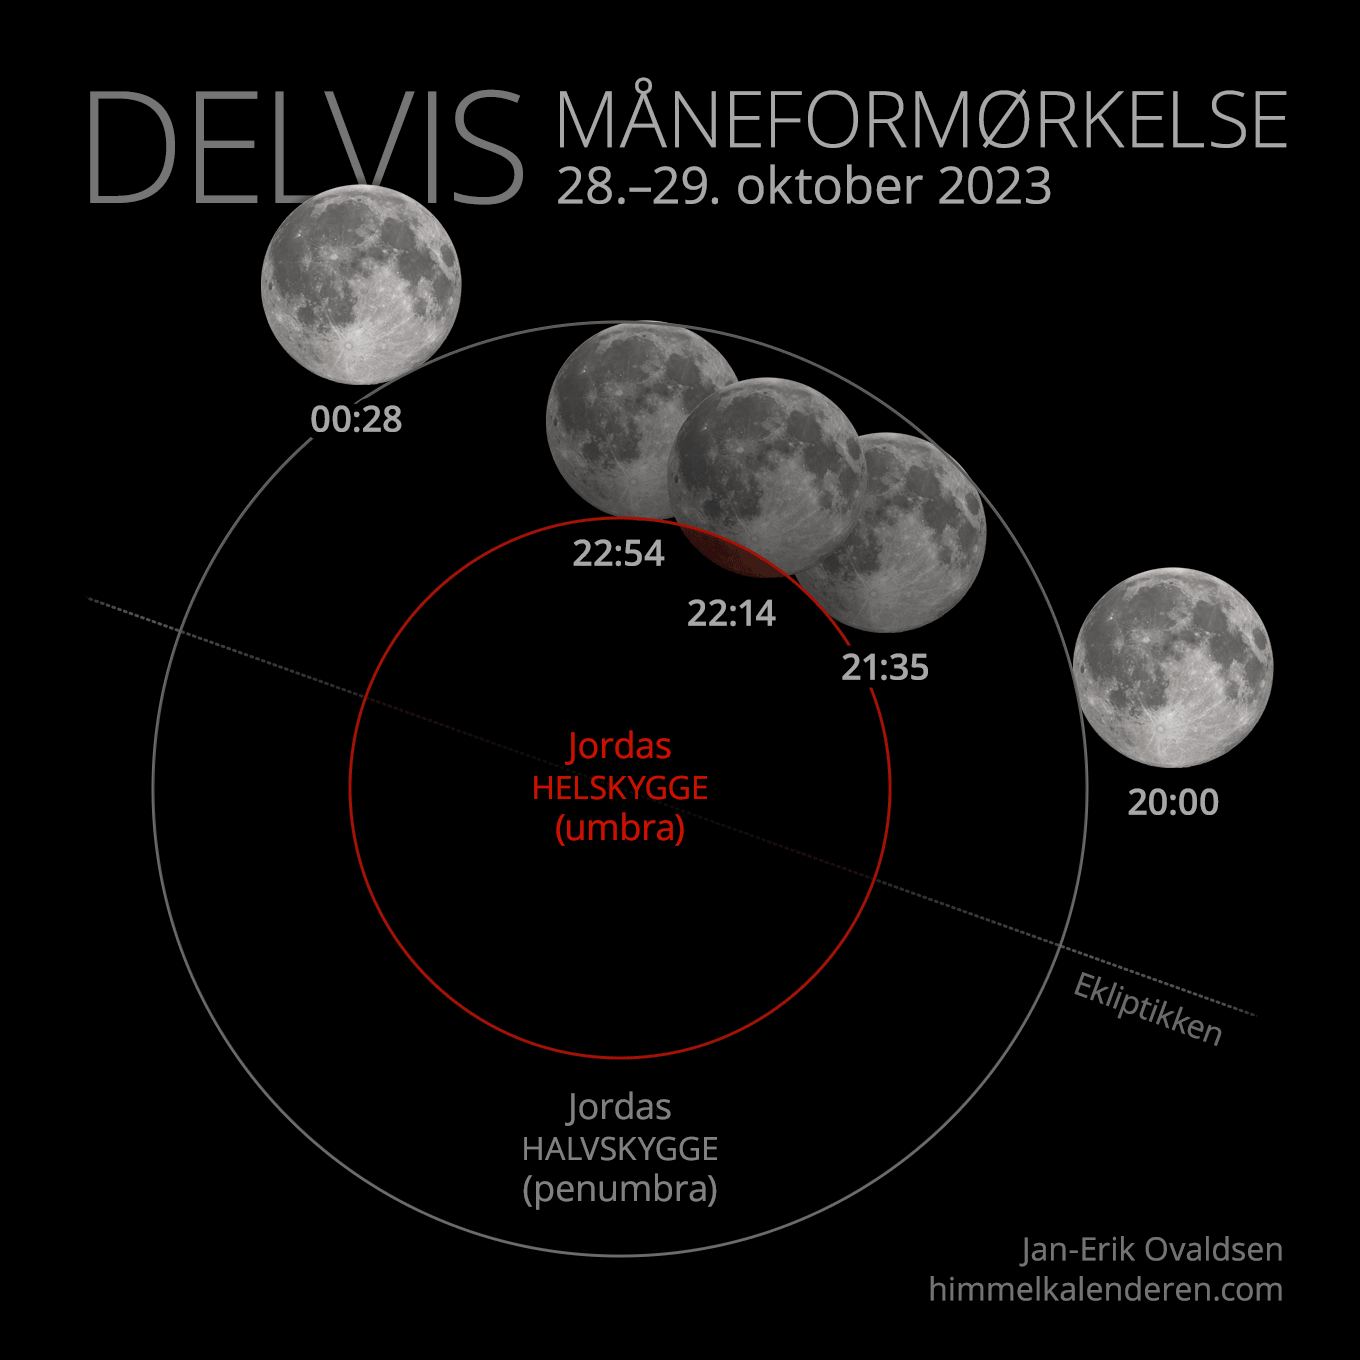 Delvis måneformørkelse 28. oktober 2023 i Norge